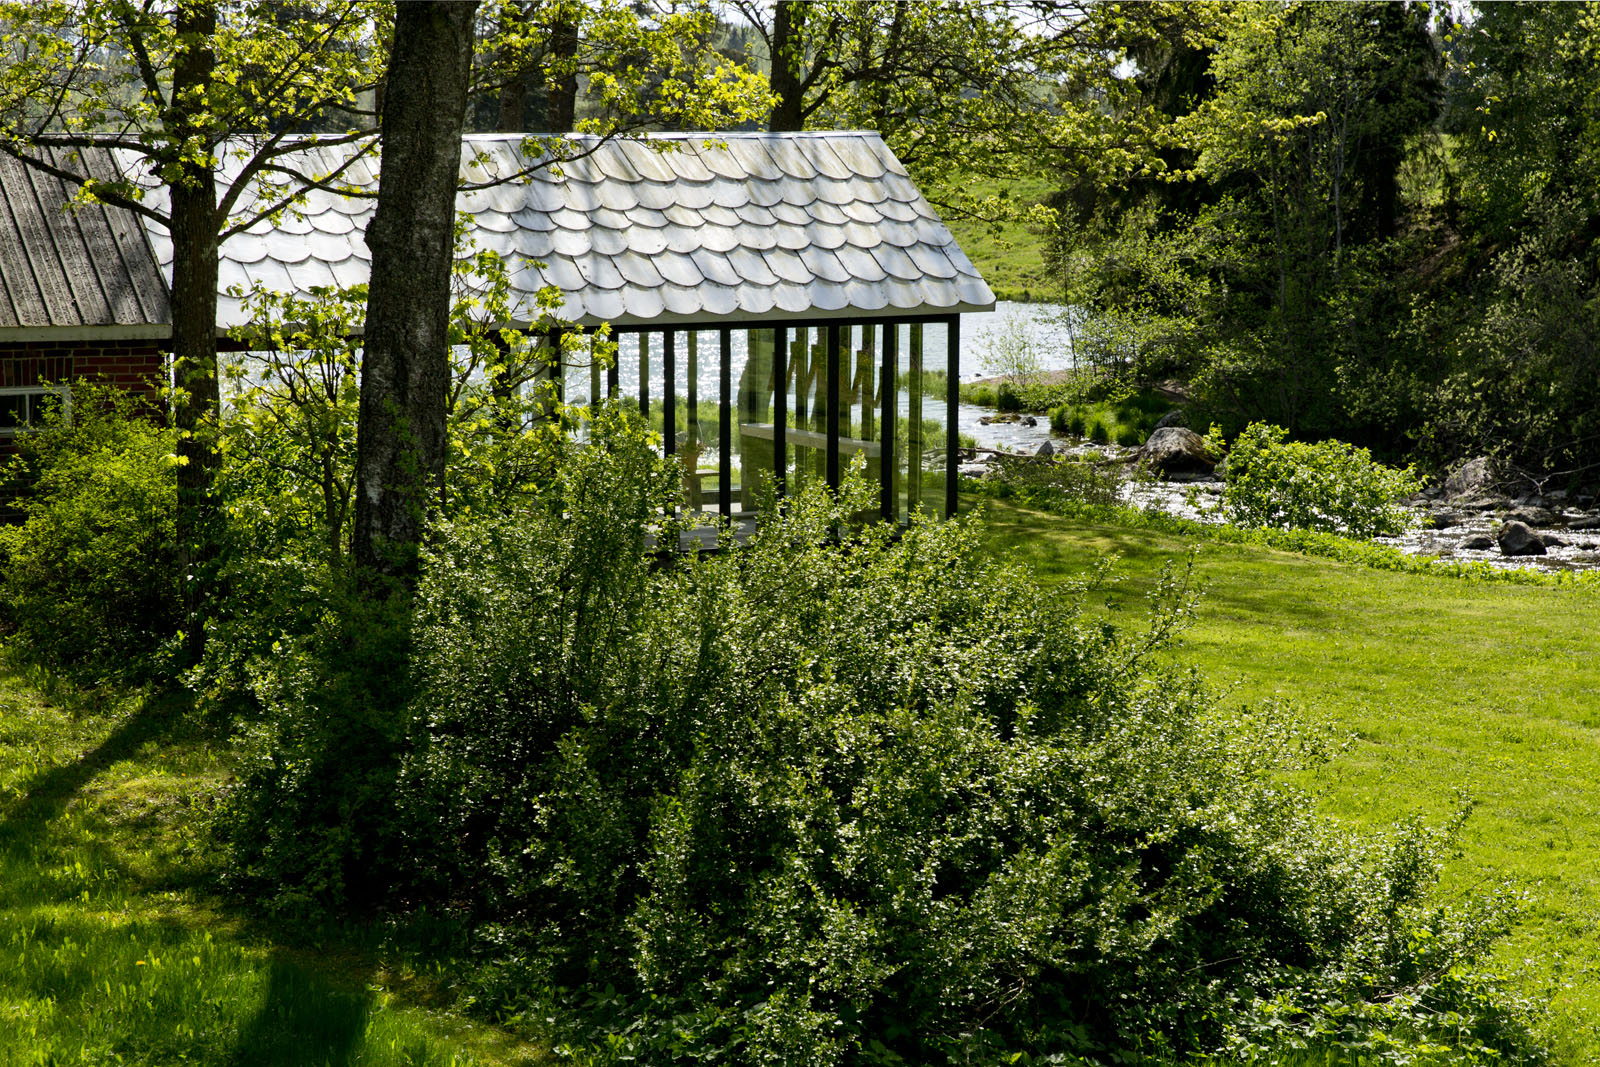 Links ein Backsteinhaus mit verglaster Terrasse. Rechts ist ein Bach, der in einen See fließt. Ein grüner Garten rundherum.